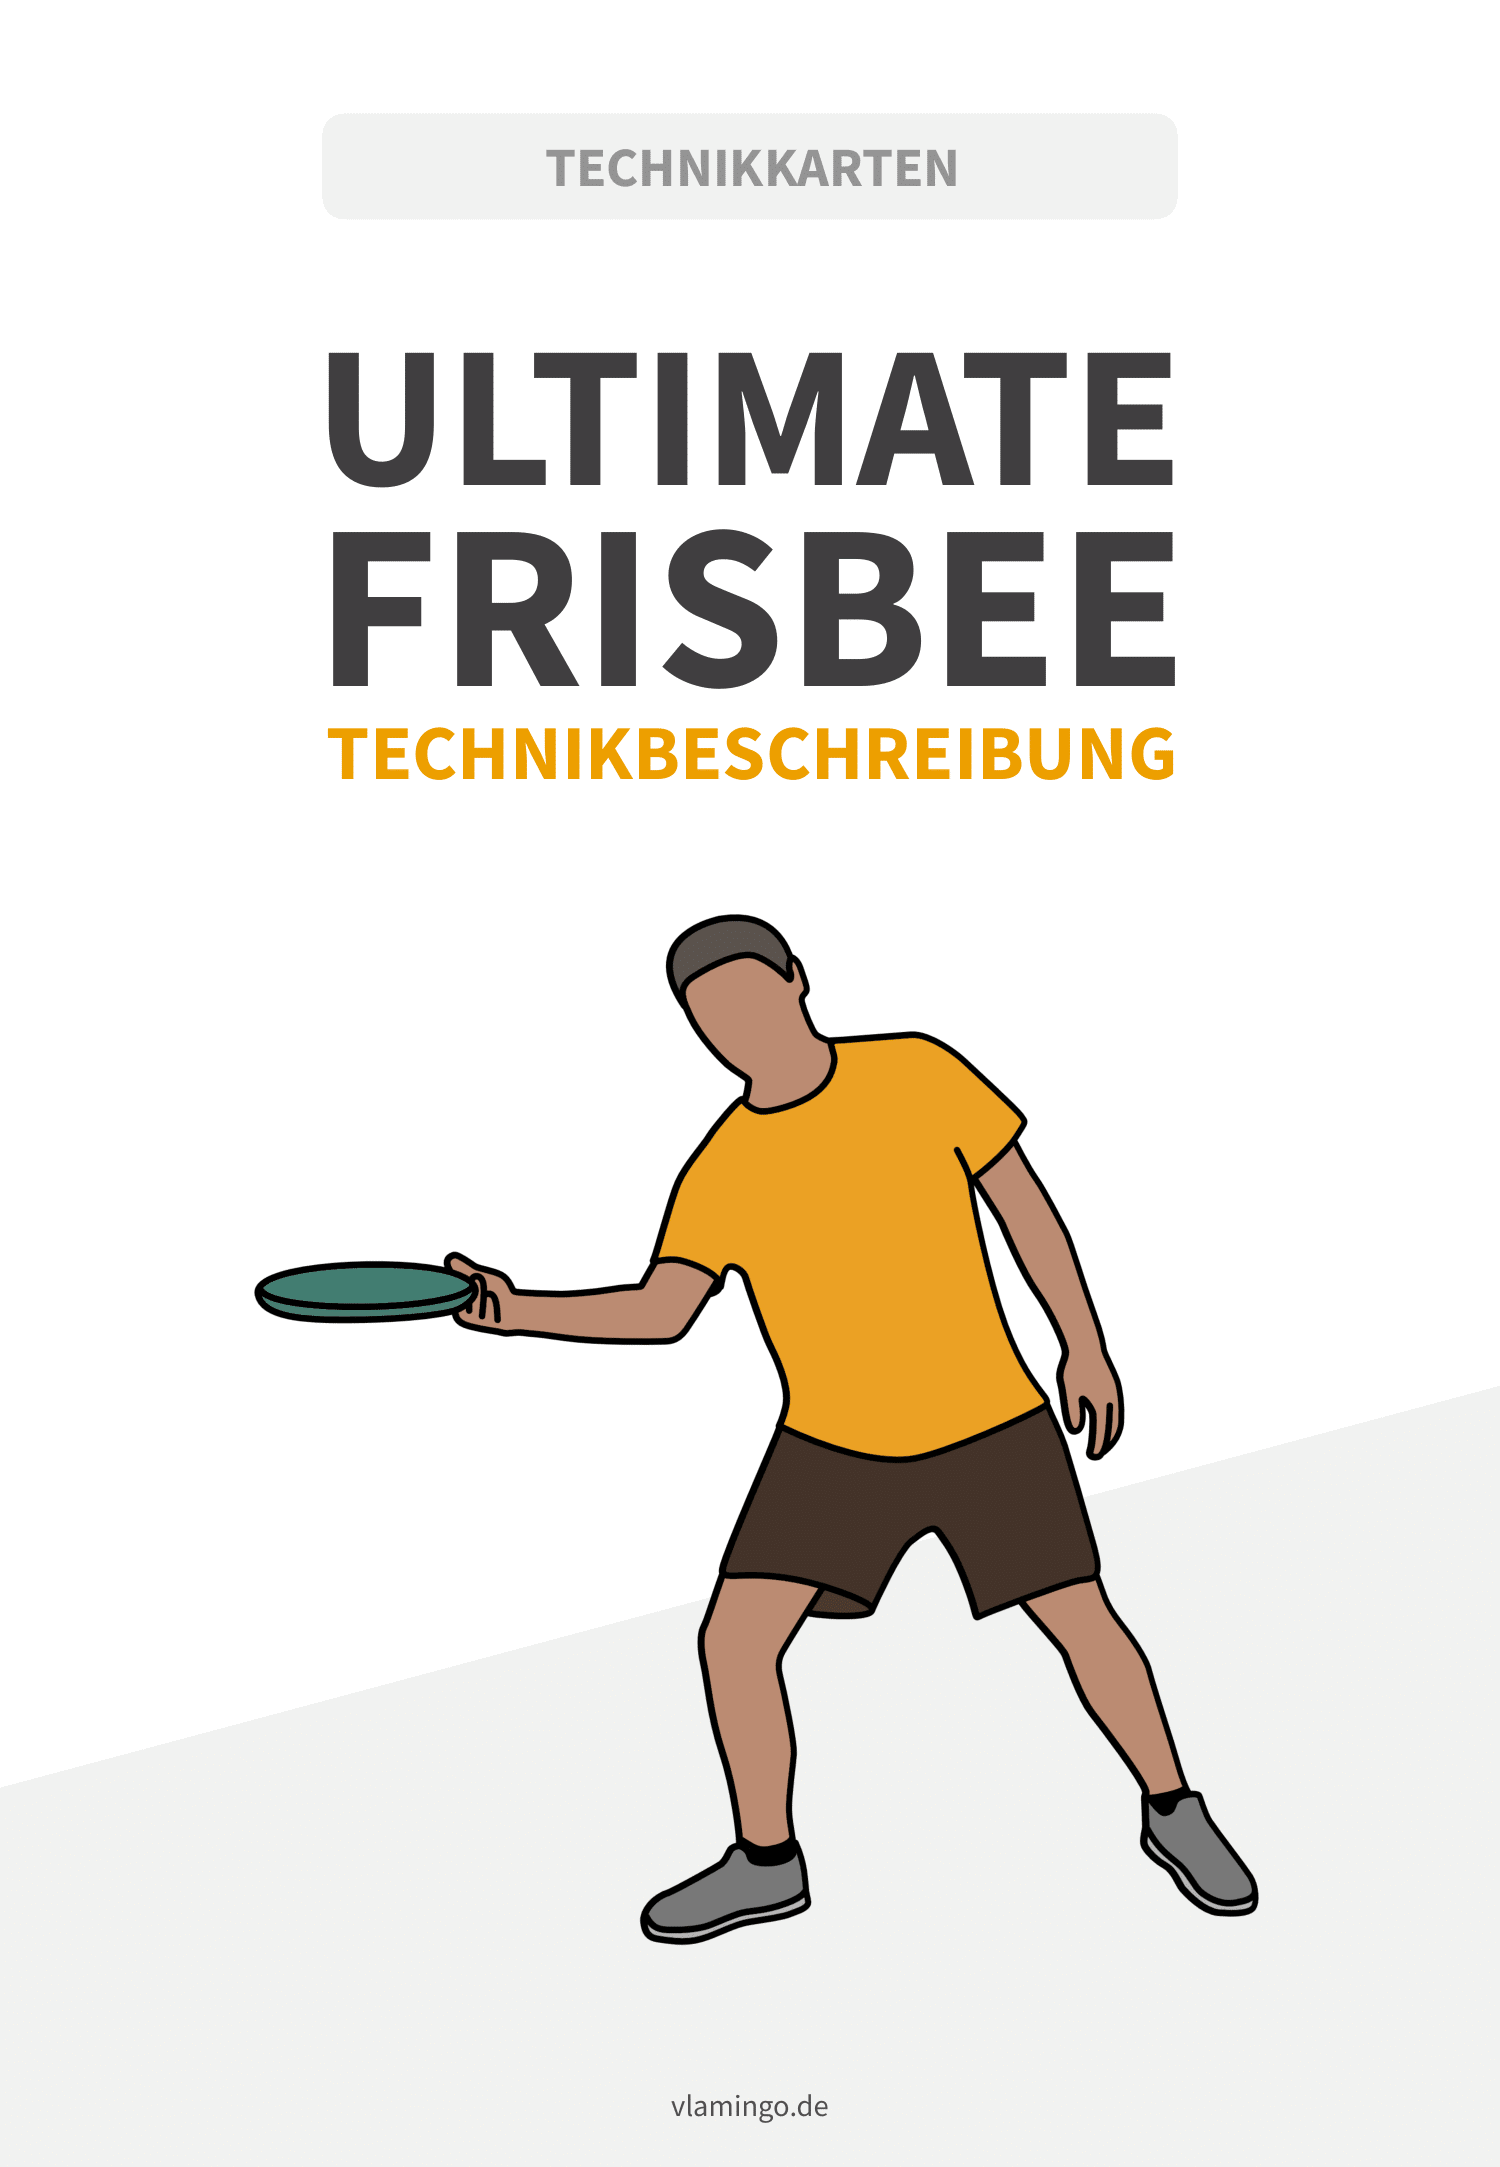 Frisbee - Wurftechniken (Vorhand, Rückhand & Over-Head)